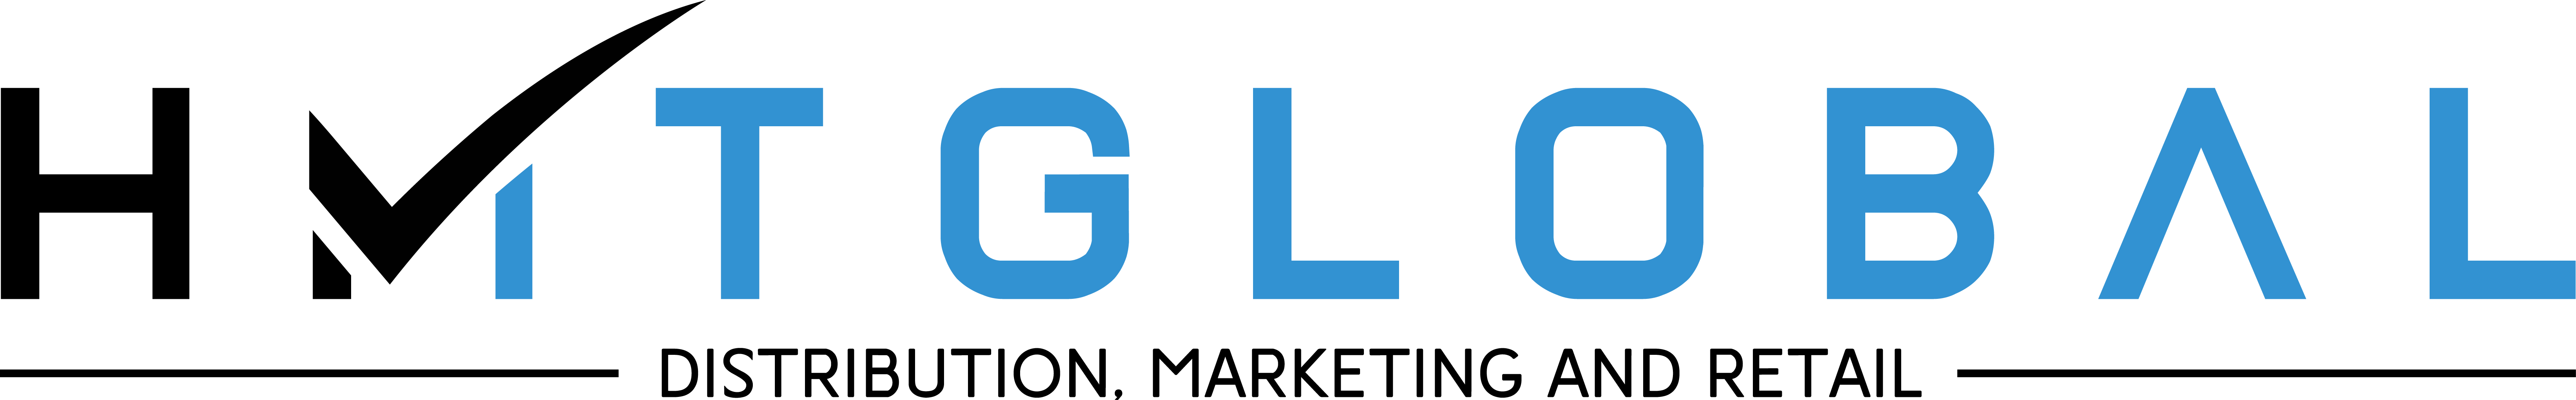 HMT Global Logo